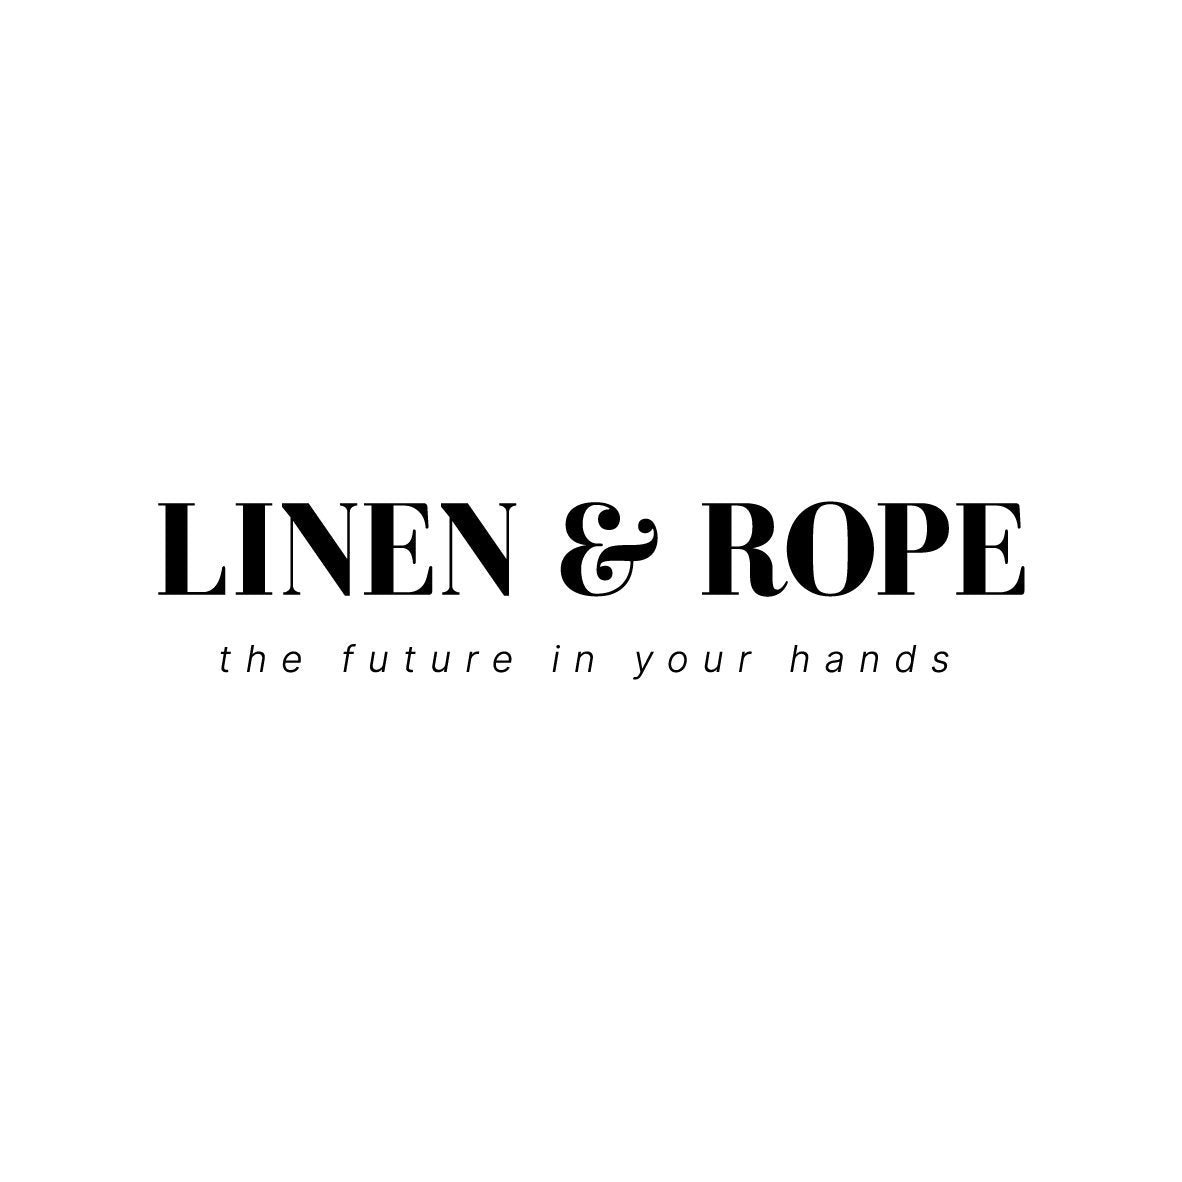 LINEN & ROPE